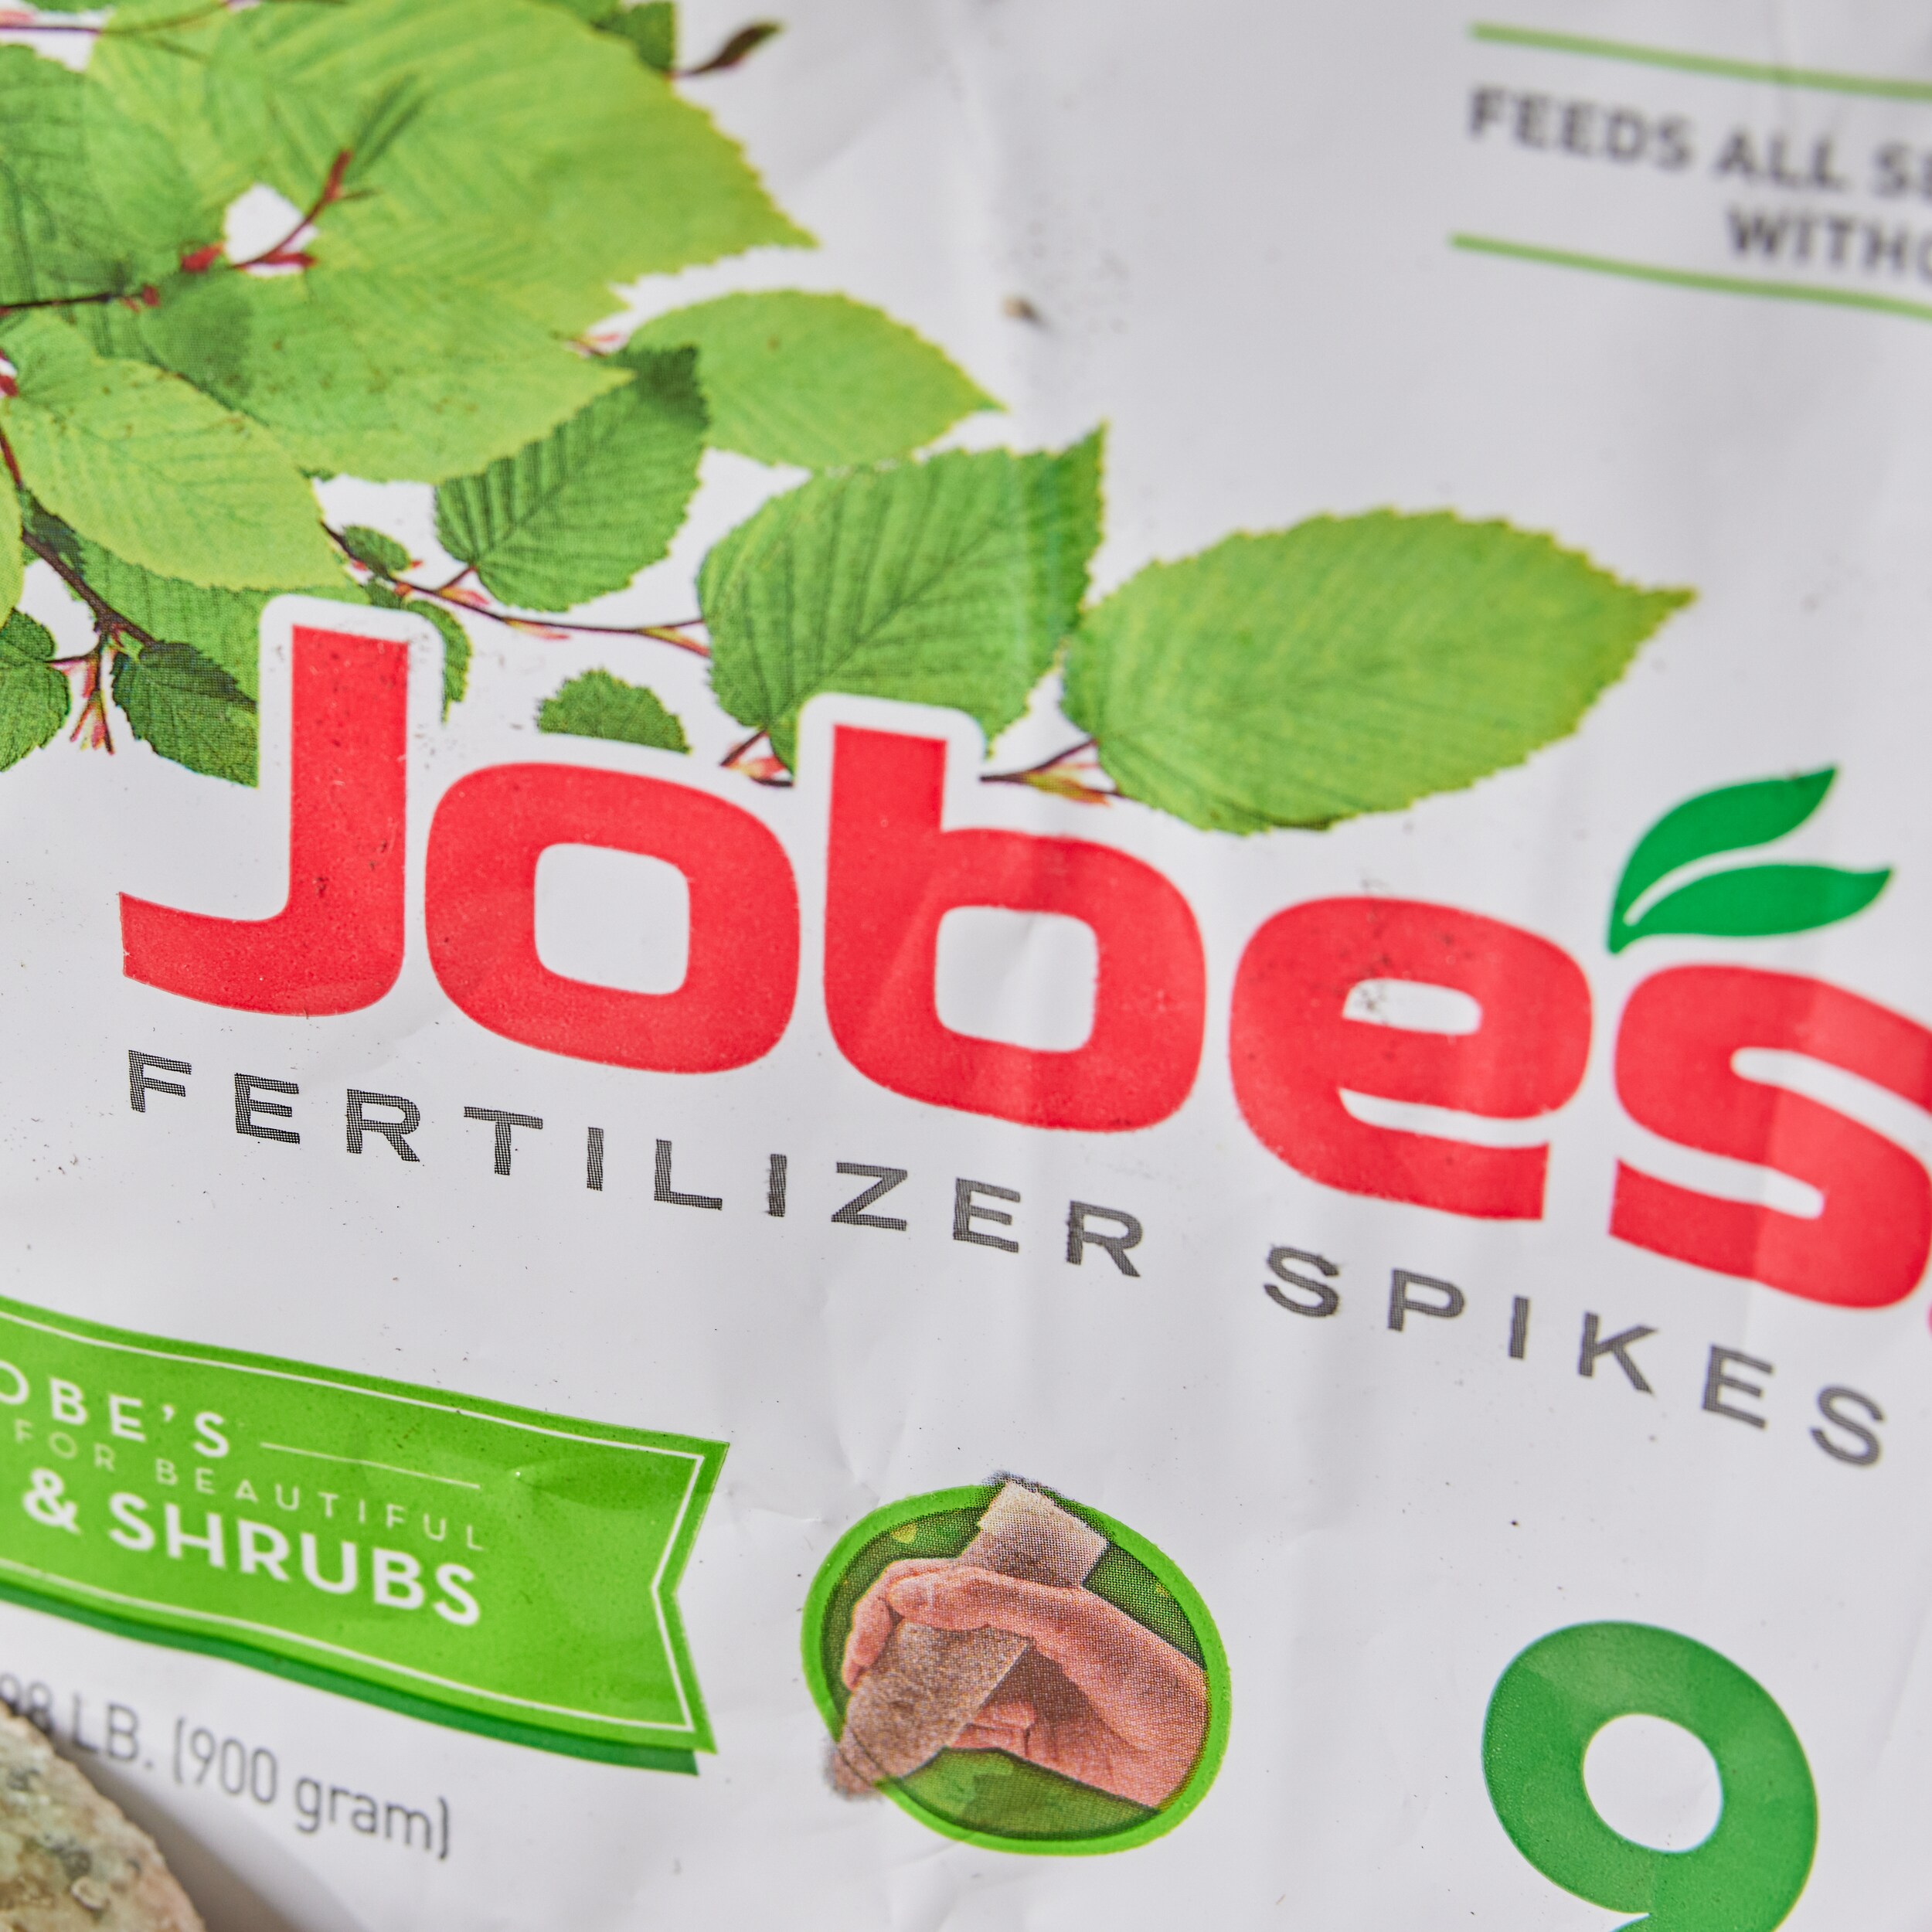 Jobe's Jobe's Tree and Shrub 9-Count Spikes Tree Food